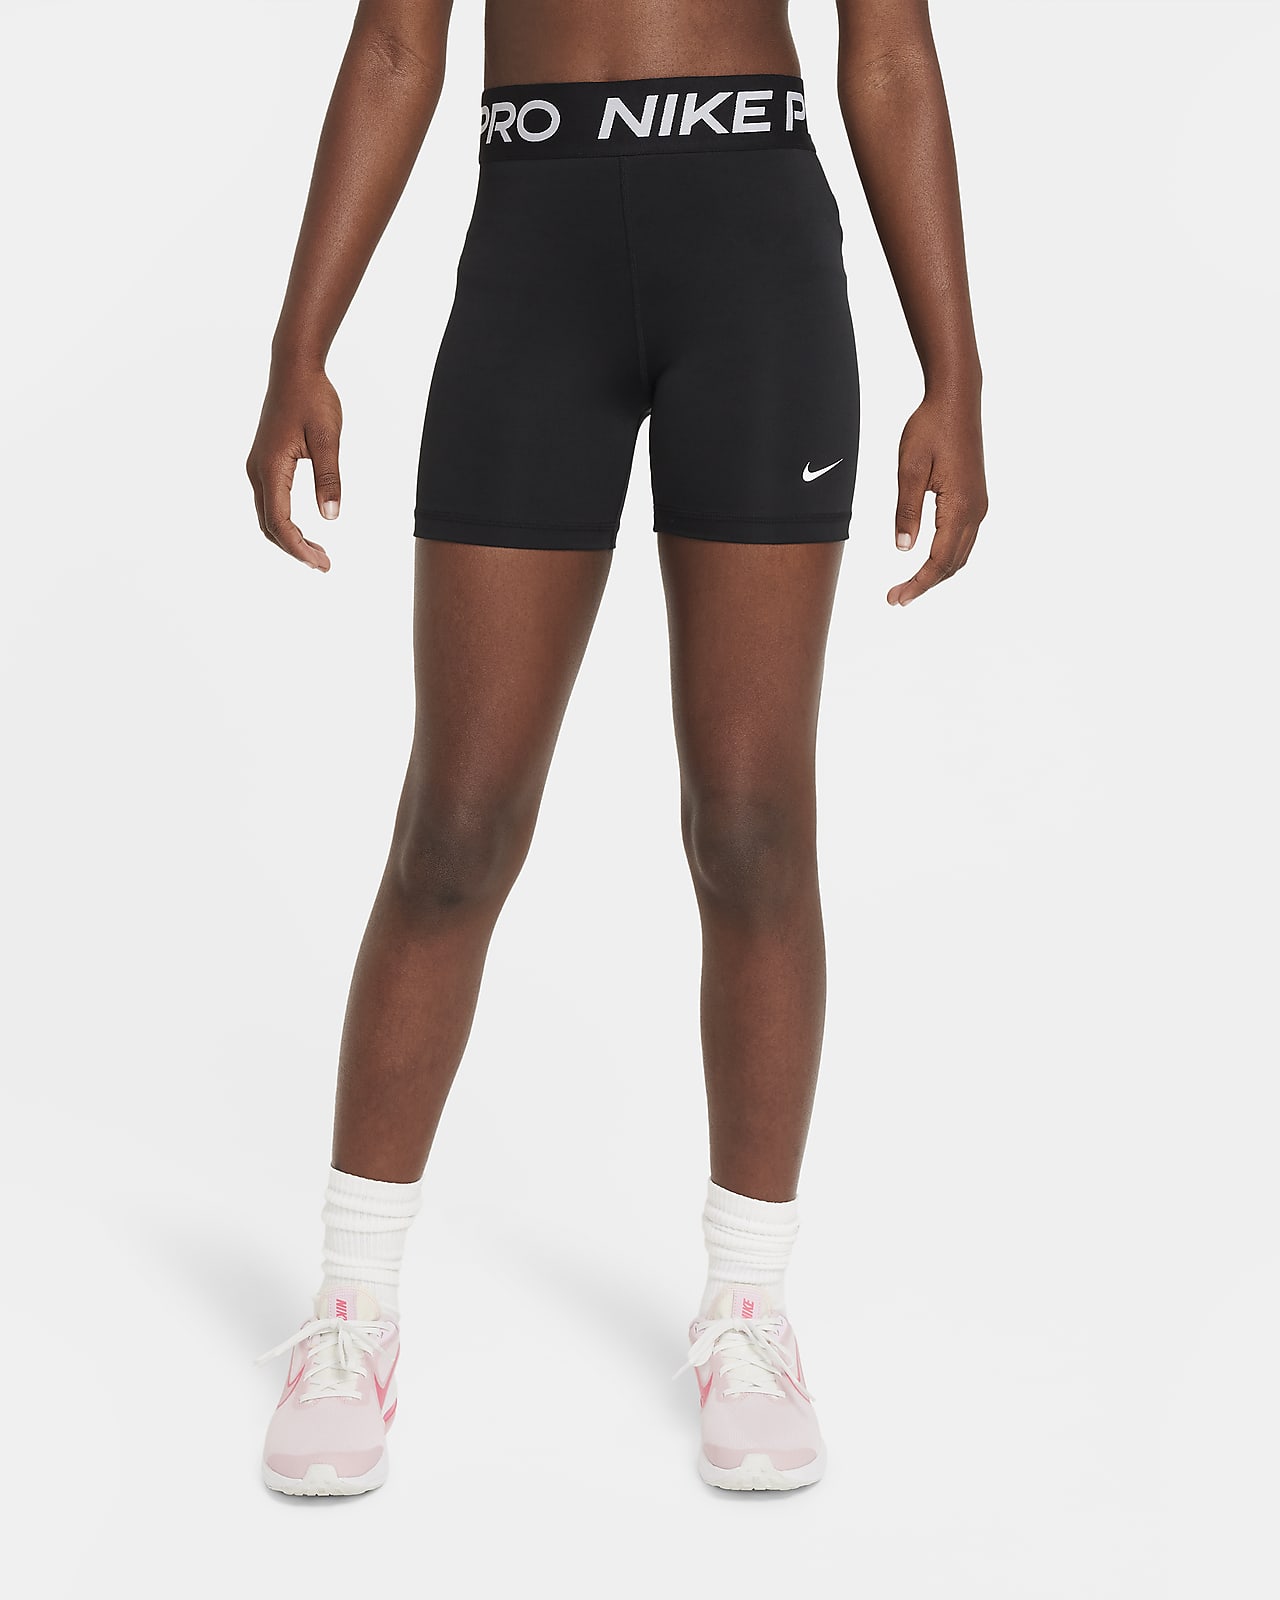 กางเกงขาสั้น 4 นิ้วเด็กโต Nike Pro (หญิง)